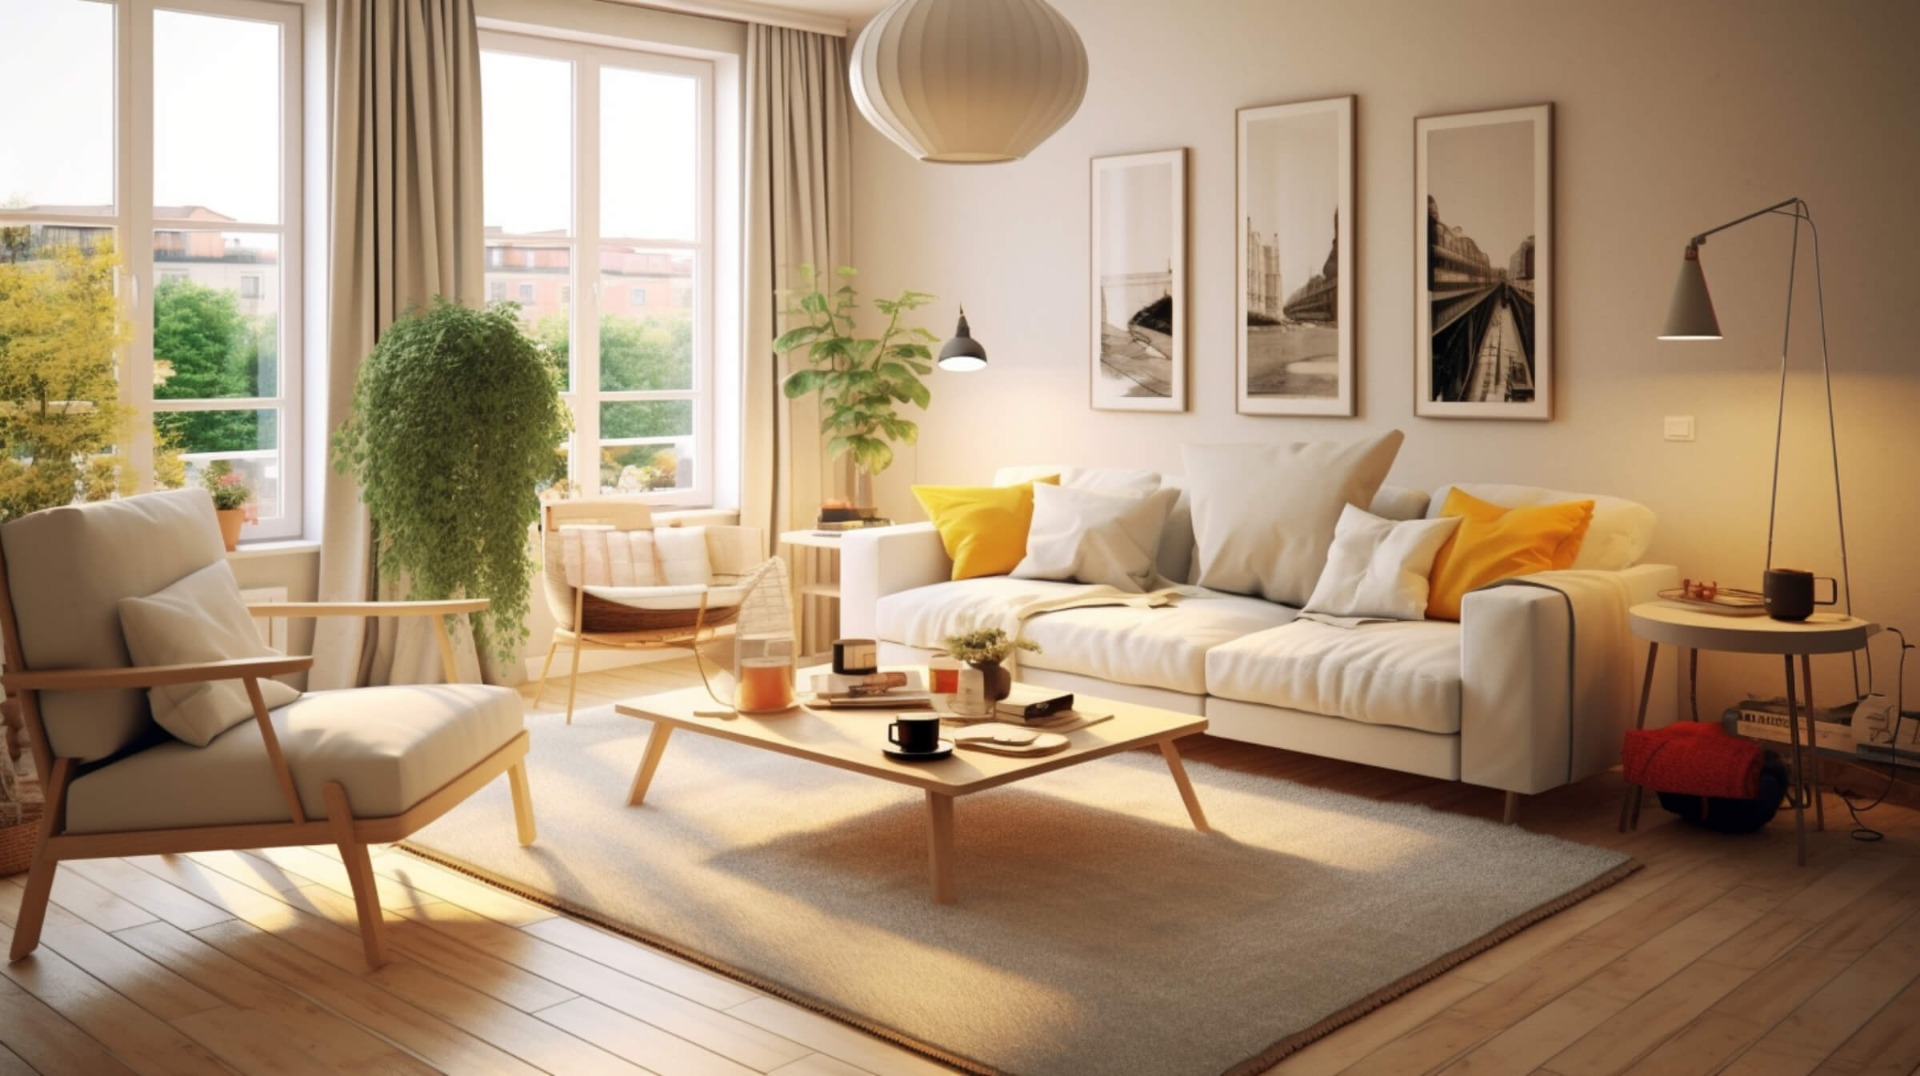 Hestya-Scandinavian-home-style-with-open-floor-plans